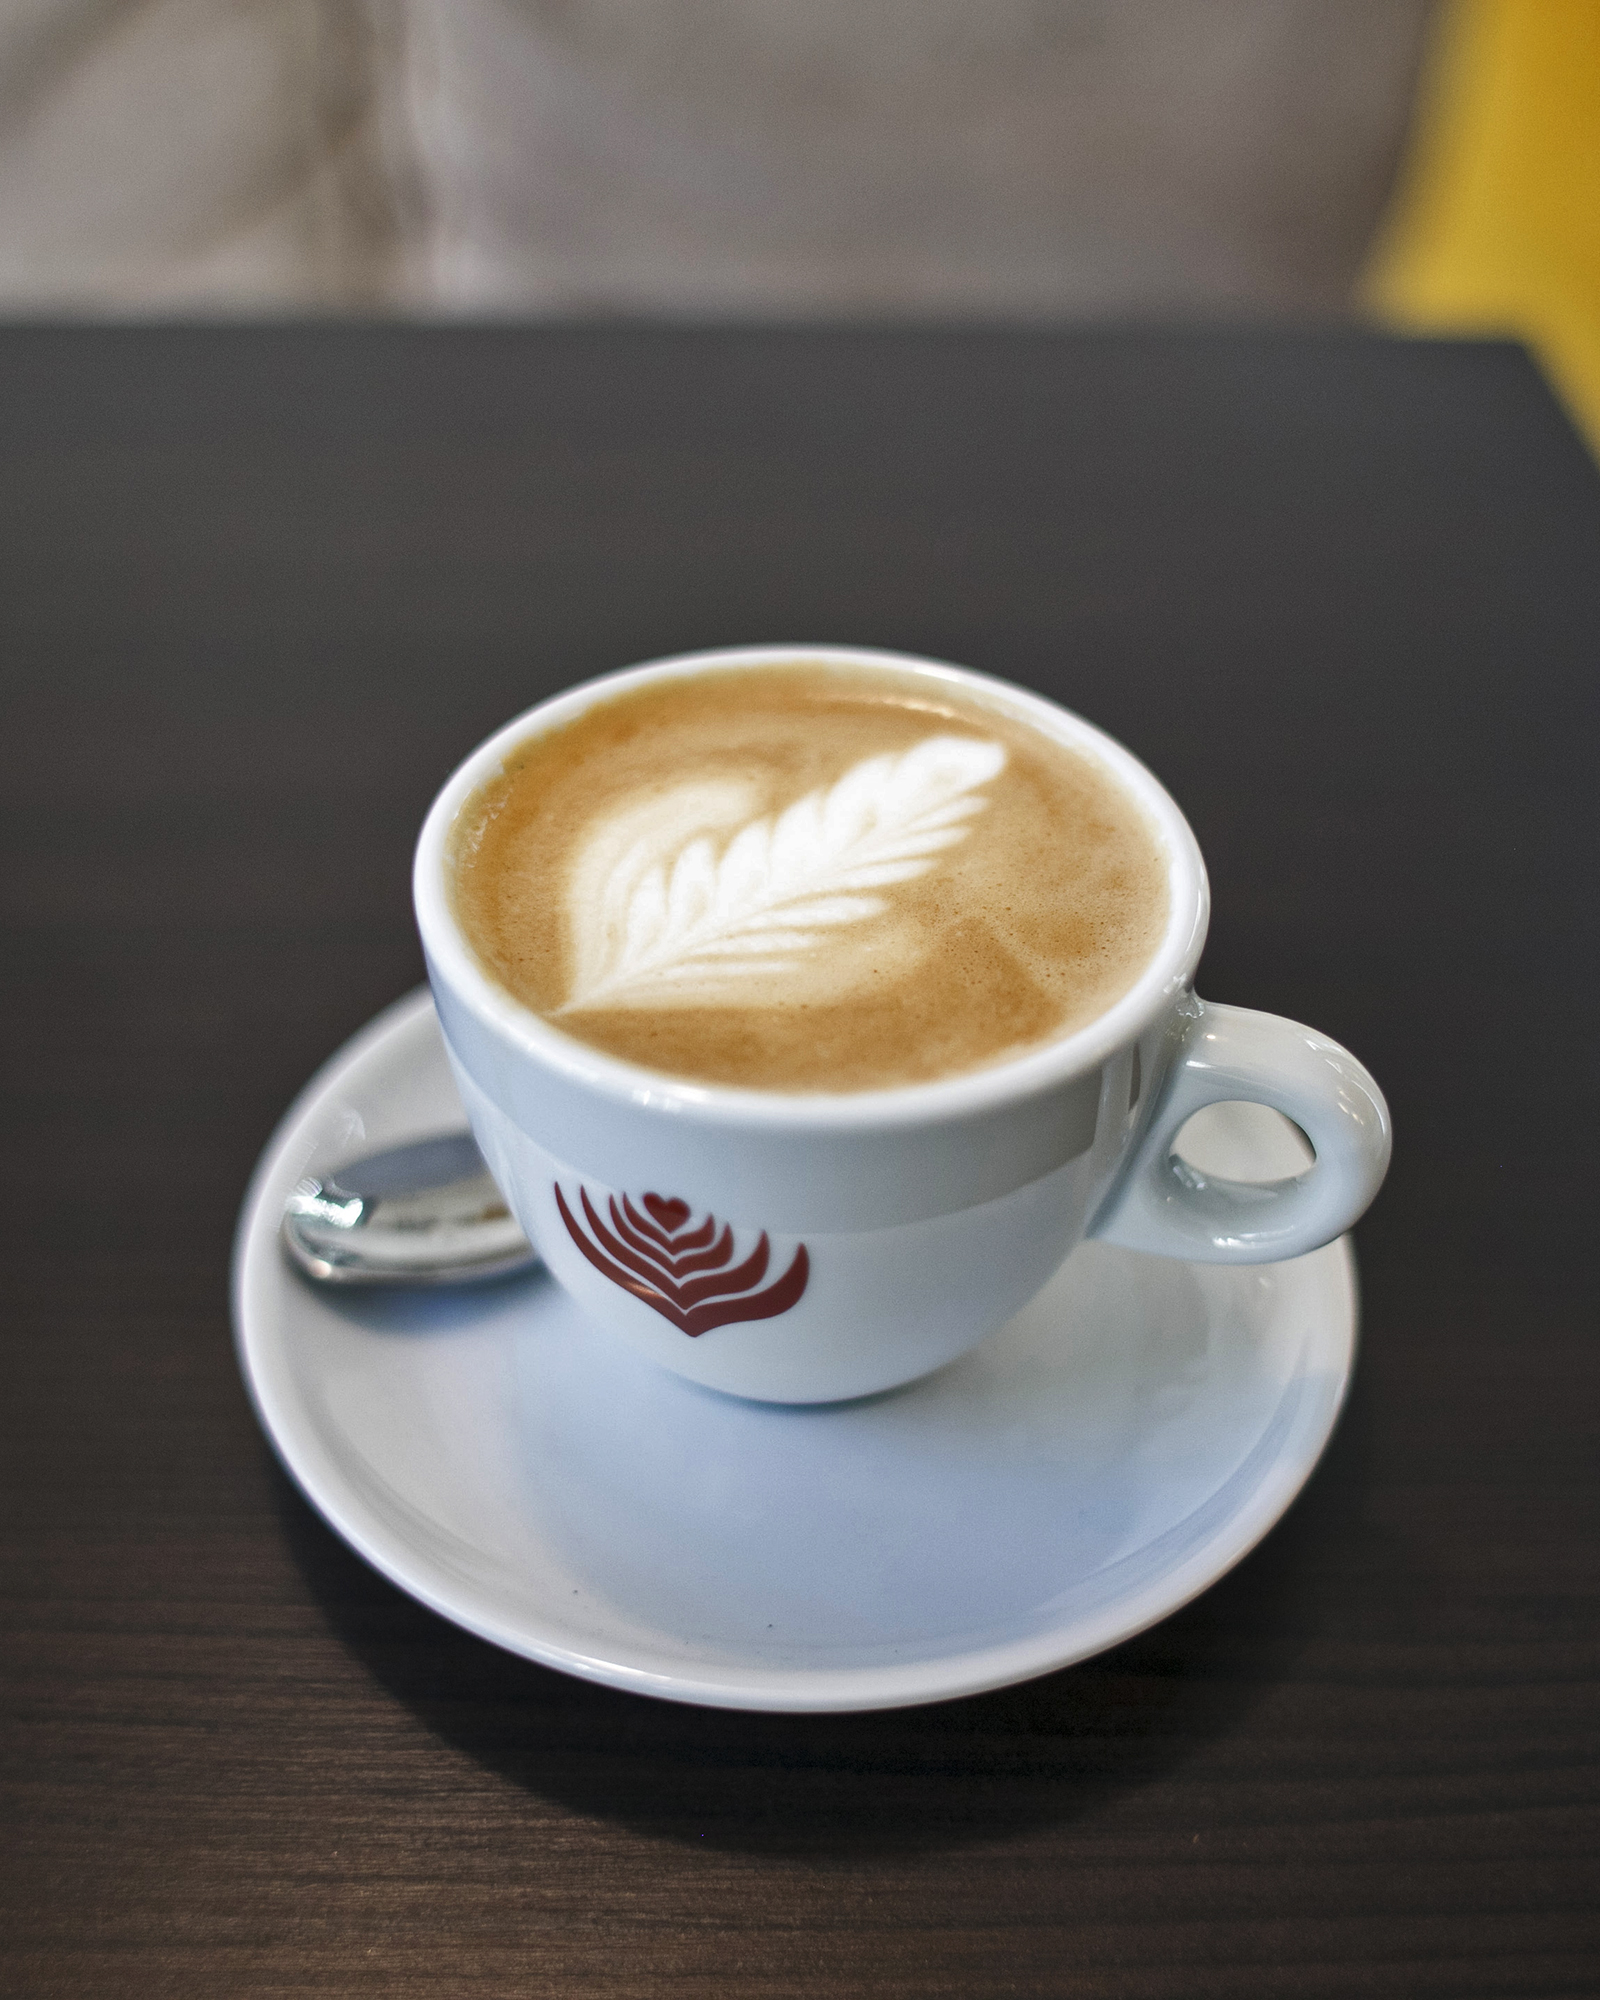 Prije godinu dana, priča, uveli su i craft kavu Lively Roasters iz Zagreba.  Izradili su blend kave baš za njihove slastičarnice koji se slaže s njihovim kolačima. 